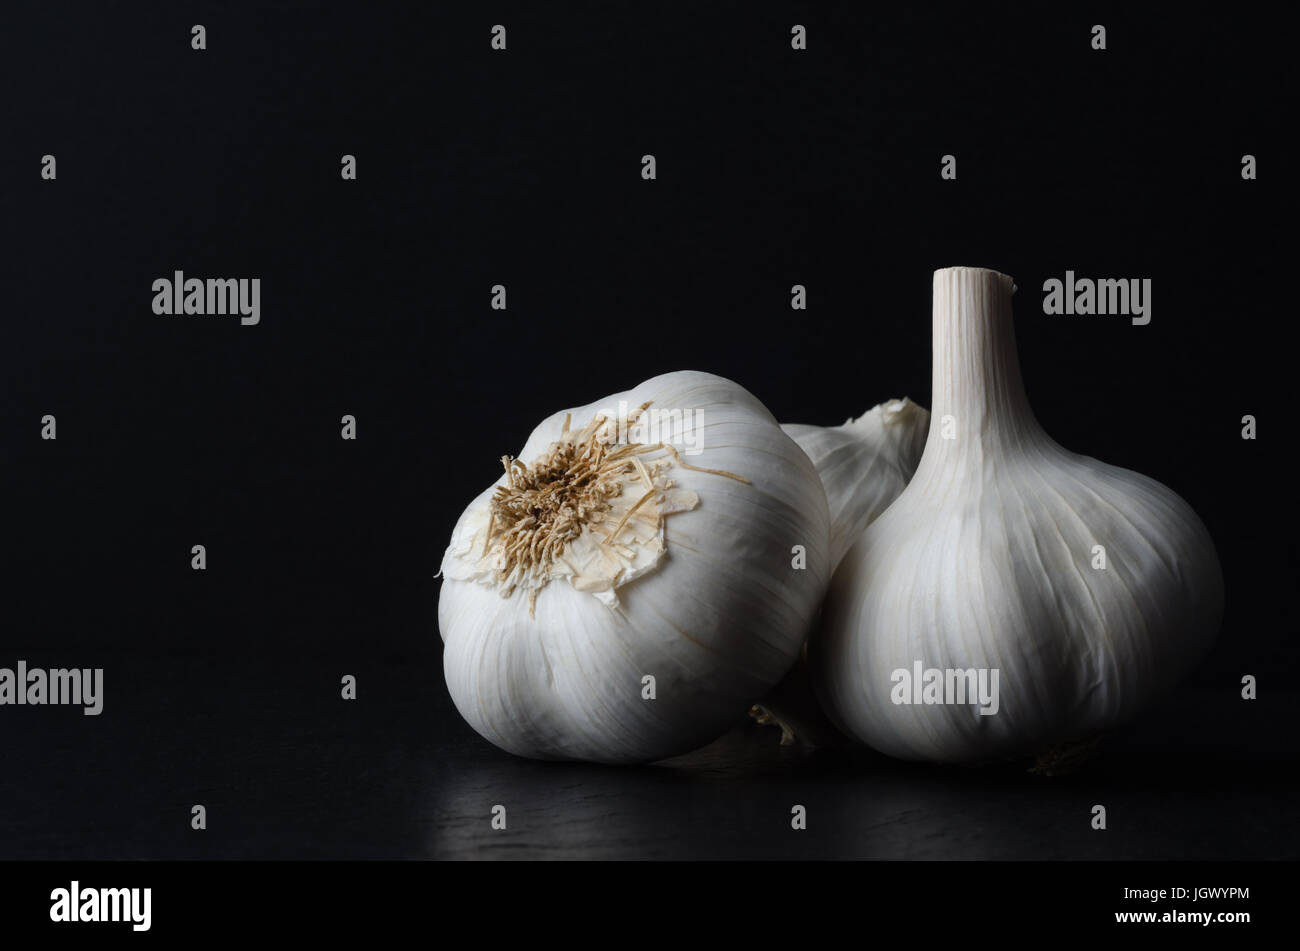 Stillleben-Zusammensetzung der drei ganze Knoblauch Zwiebeln auf schwarzem Schiefer auf schwarzem Hintergrund. Stockfoto